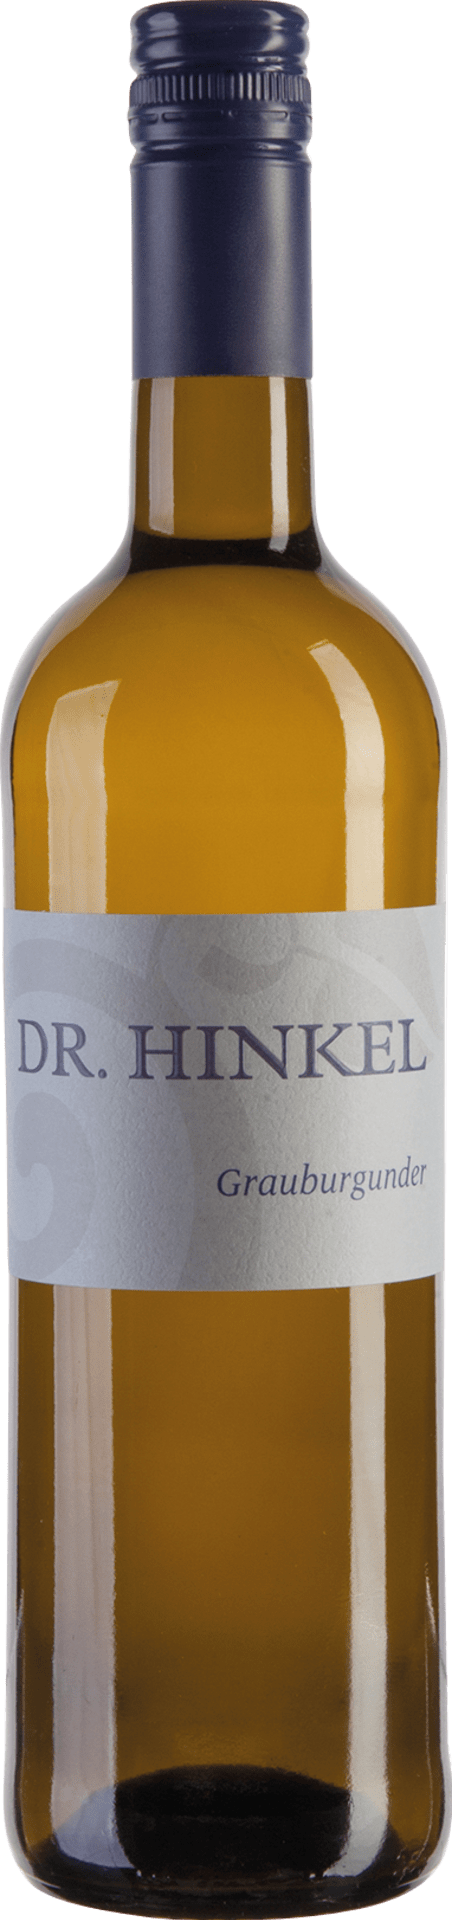 Grauburgunder Qualitätswein